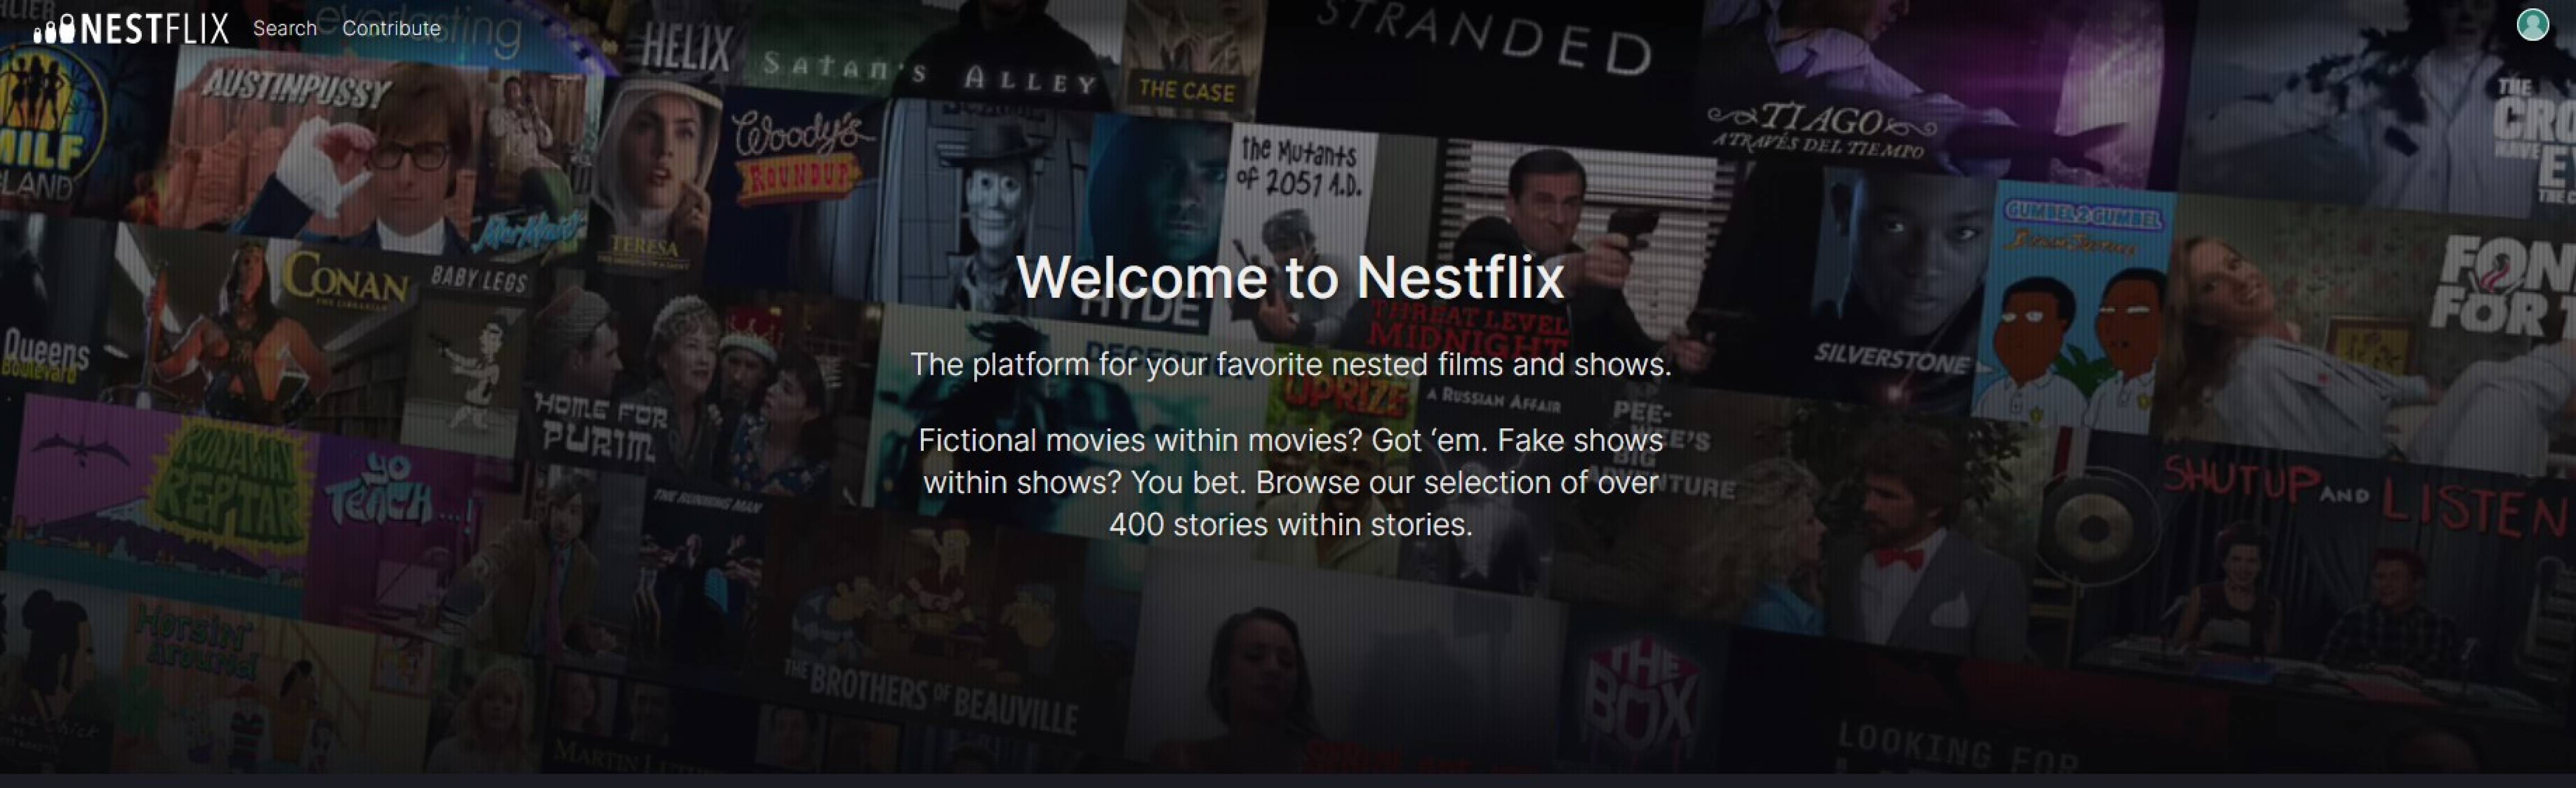 Nestflix е пародията на Netflix